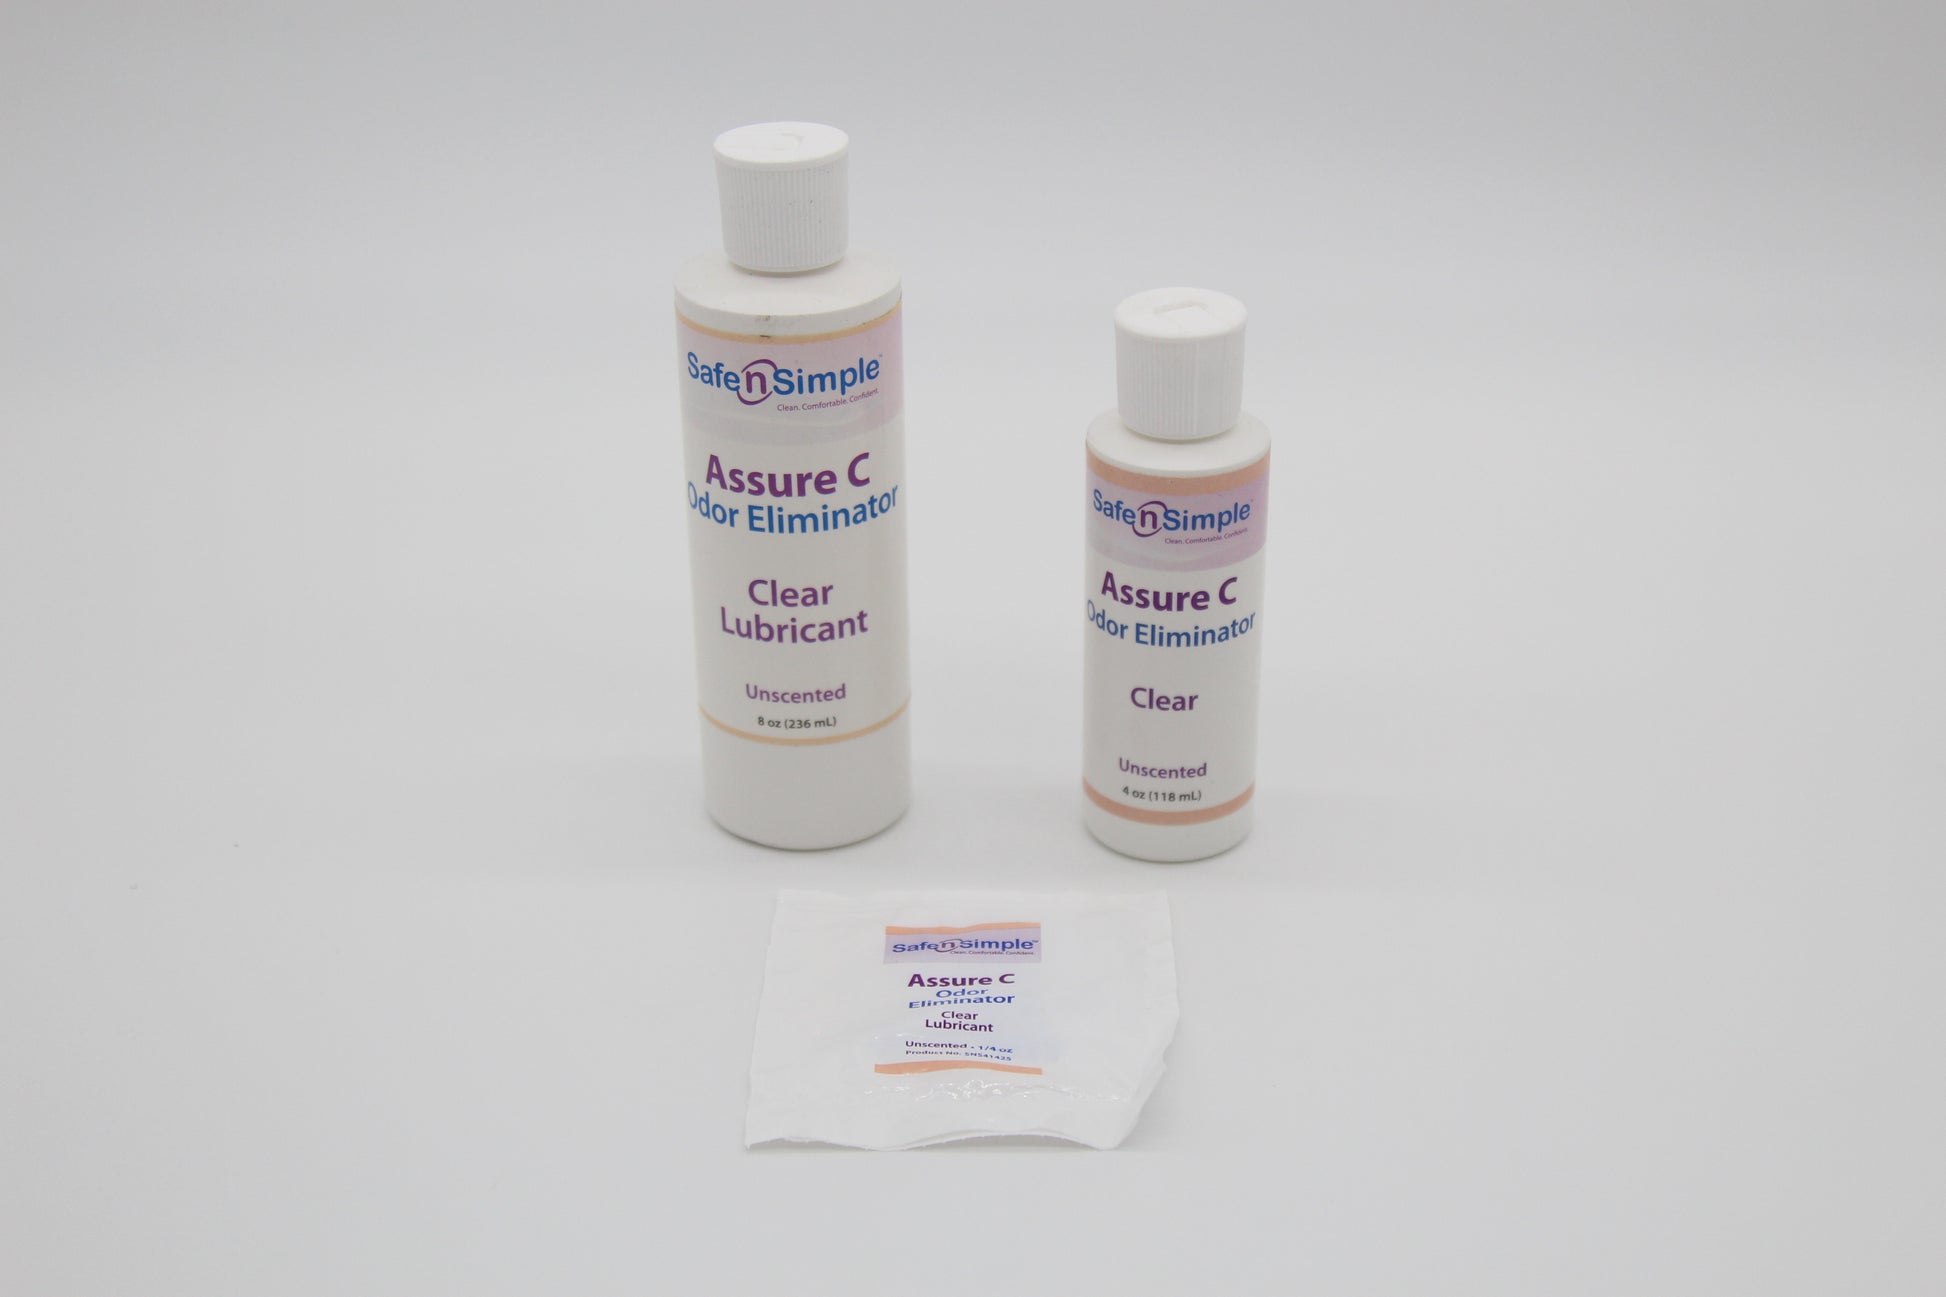 Assure C Odor Eliminator Clear | Medical products | New medical products | Safe n Simple | SNS medical